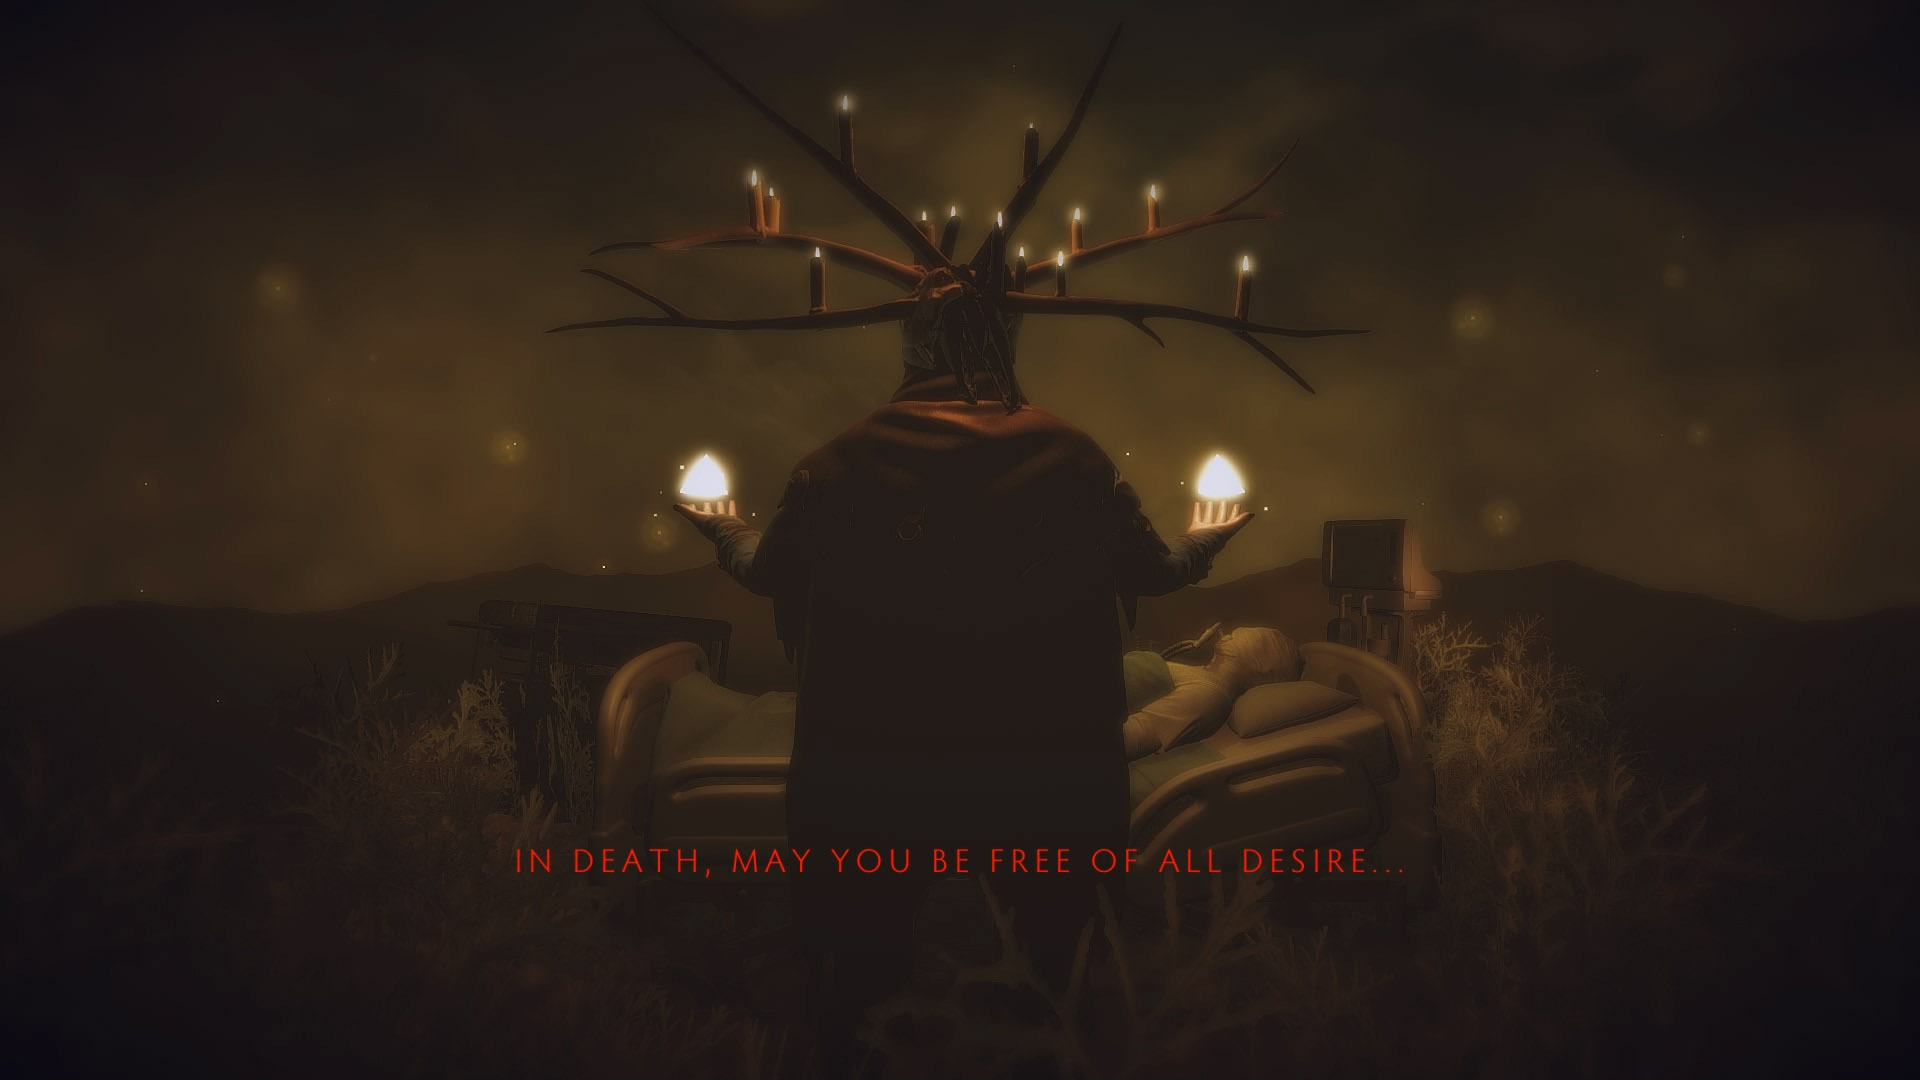 意识国度与死神交锋 独立动作游戏《醒来》6月发售